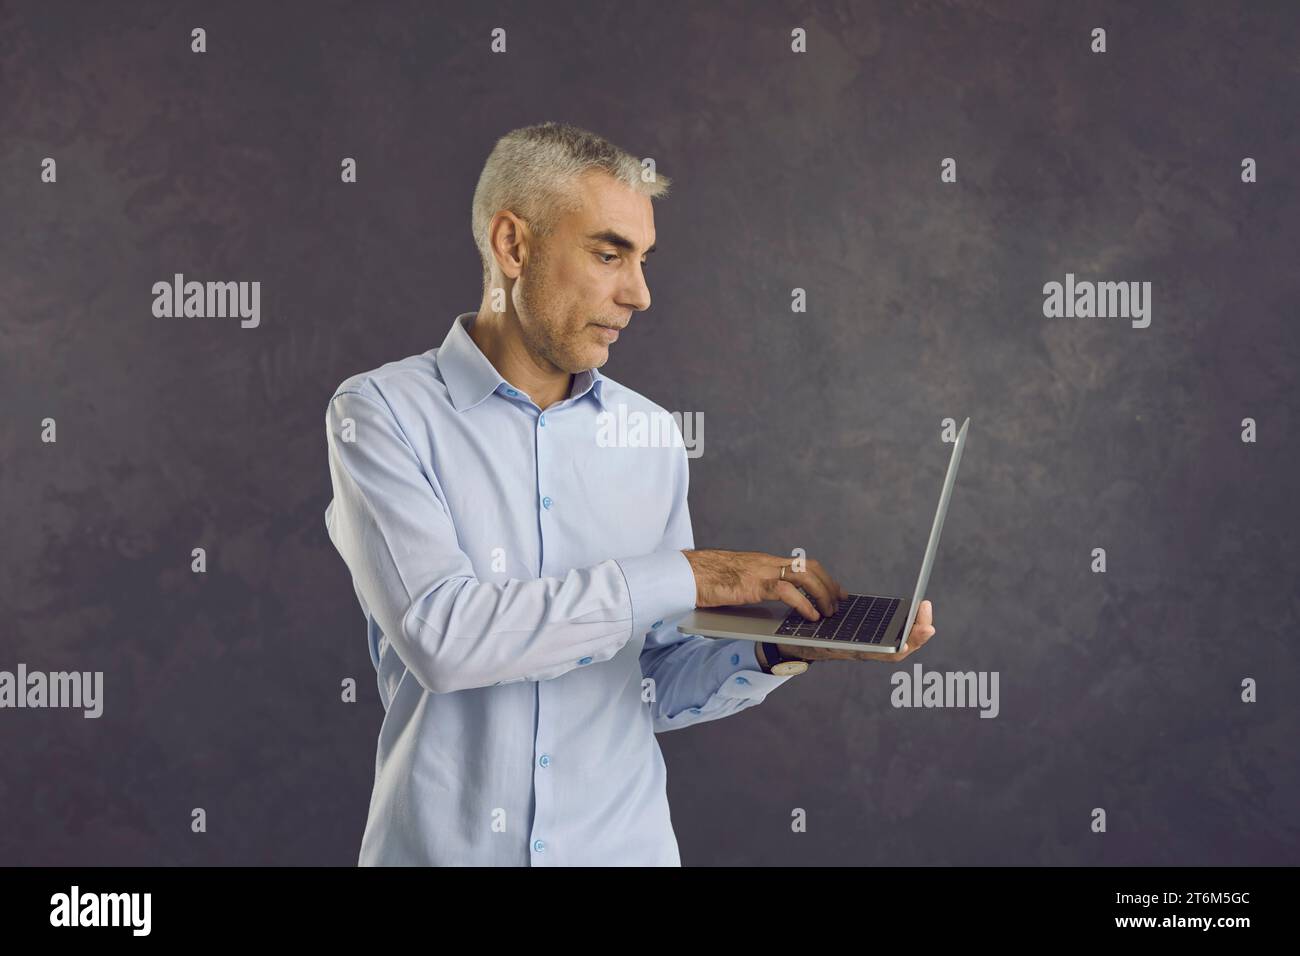 Foto in studio di un uomo anziano serio che tiene in braccio e usa il suo moderno computer portatile Foto Stock